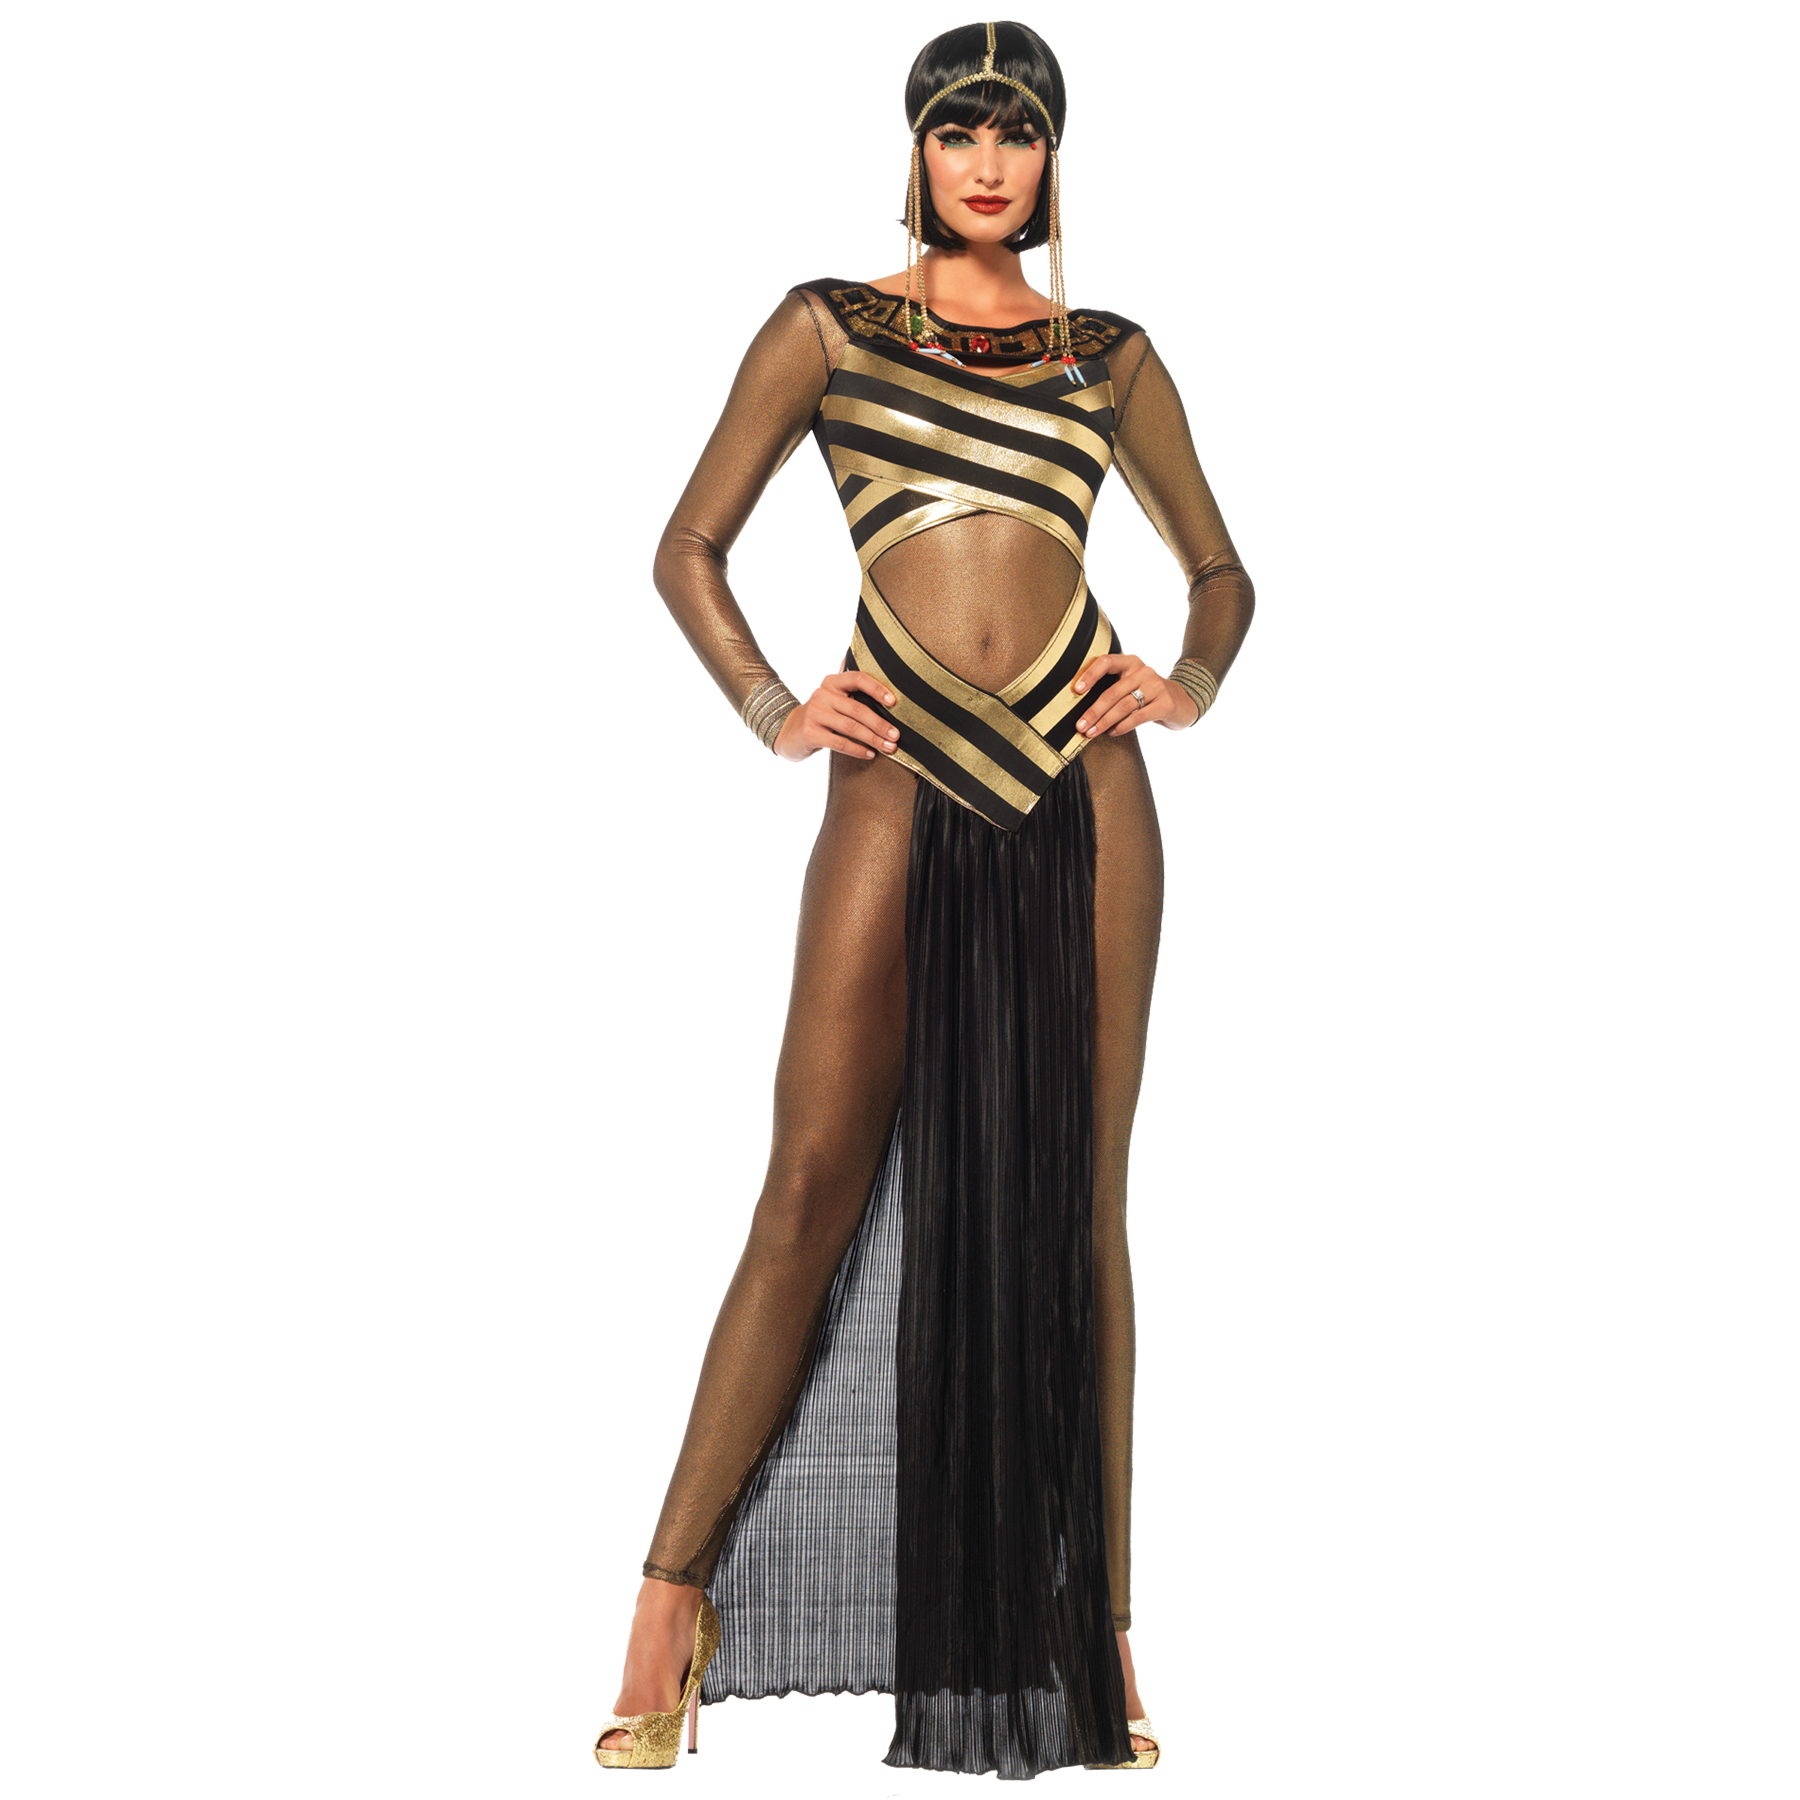 Women's Nile Queen Costume